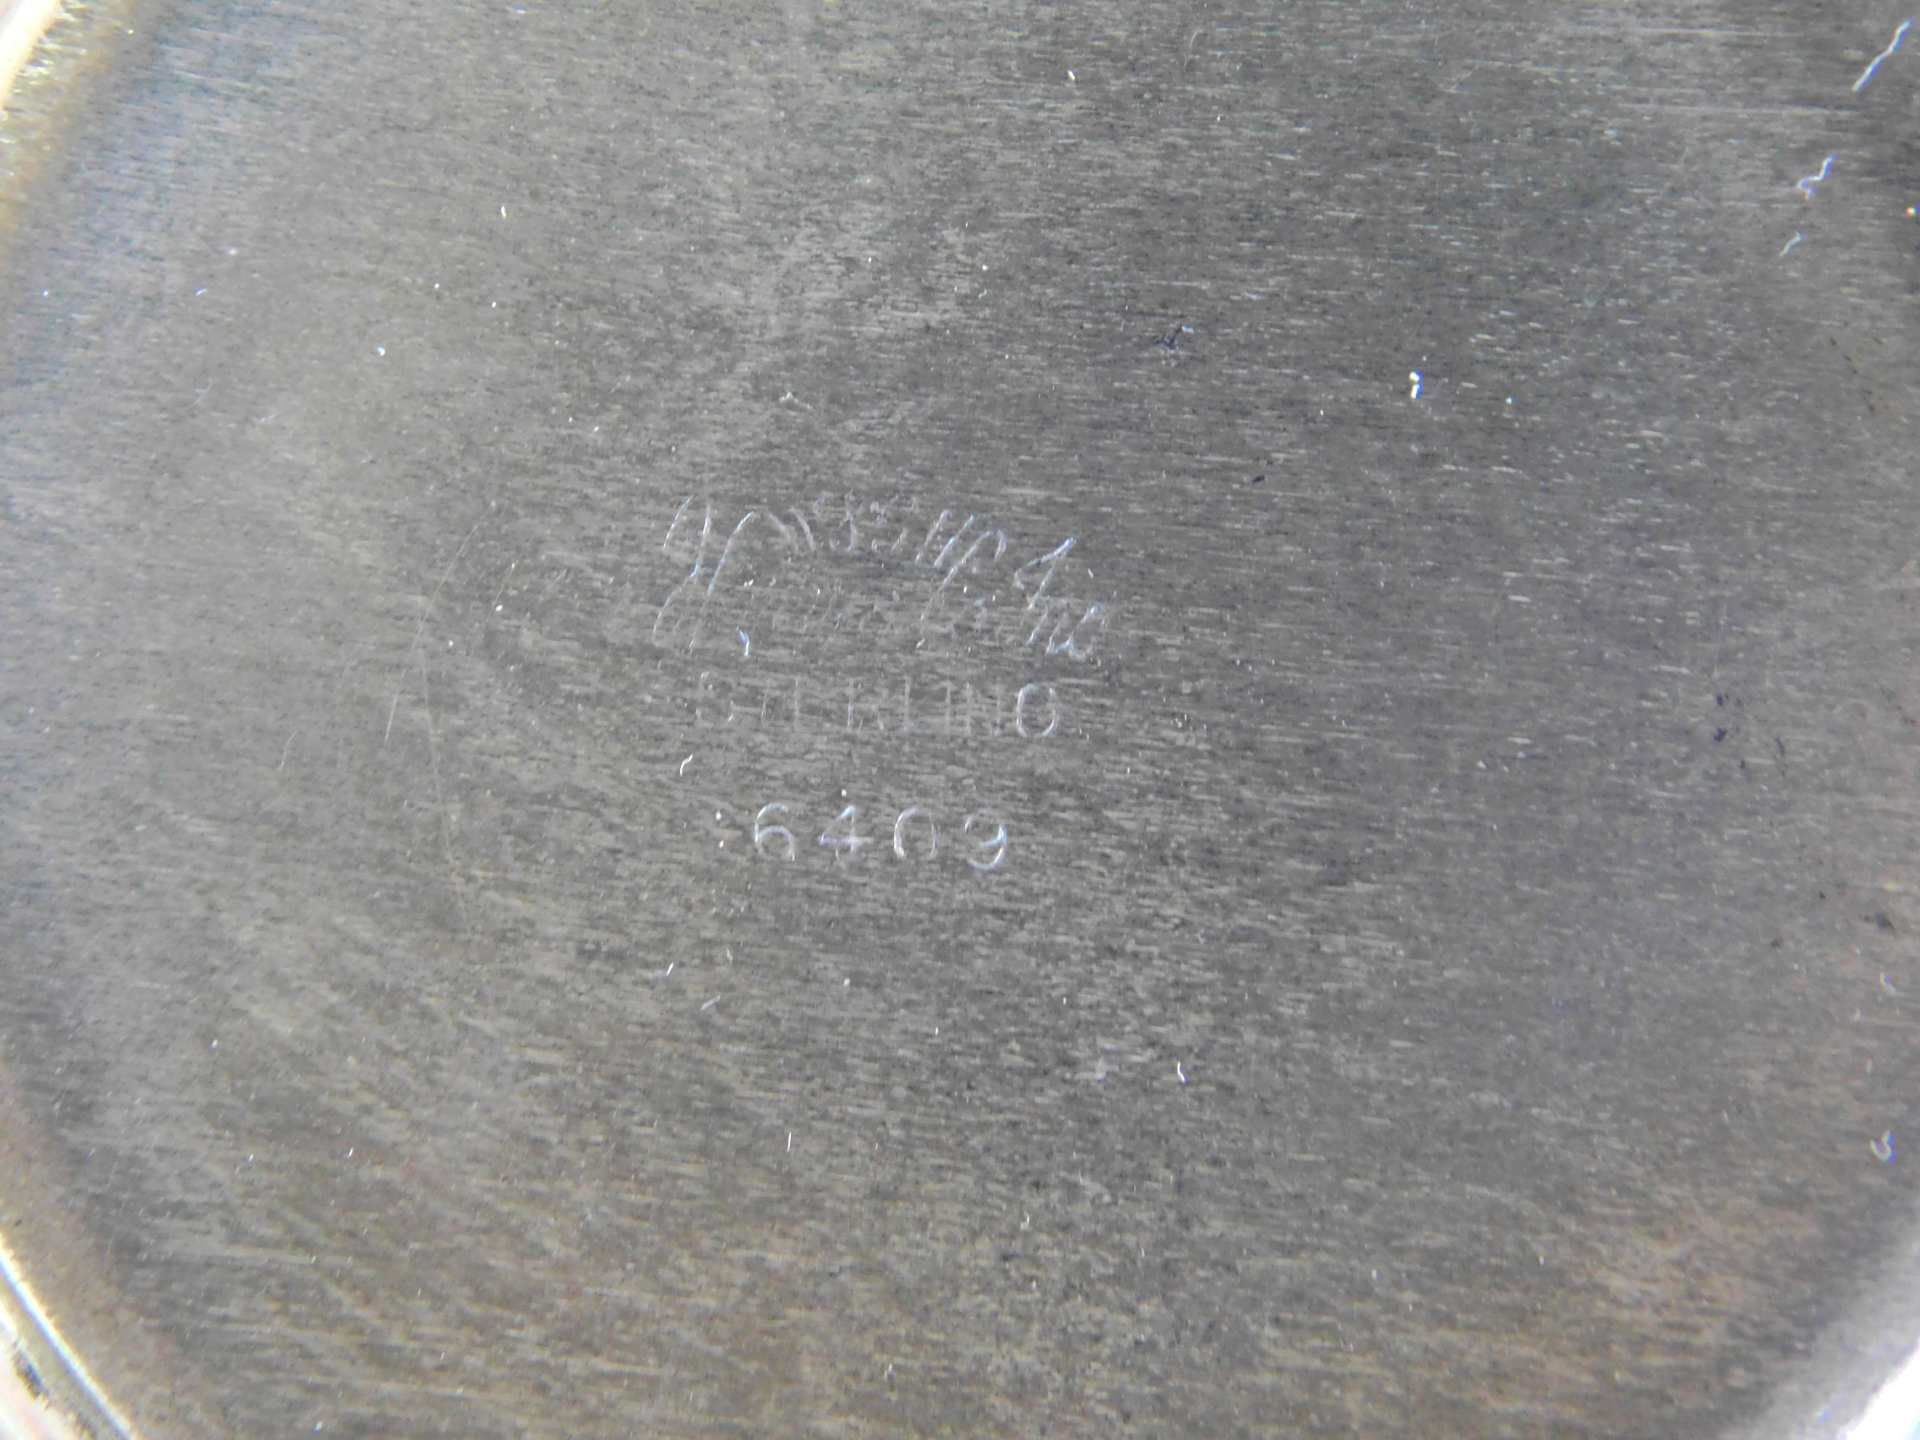 Tasse, Sterling Silber 925, gepunzt H.Gray co. inc., Nr 6409, Gewicht 68 g, Höhe 6 cm, Ø 7 cm, - Bild 4 aus 5